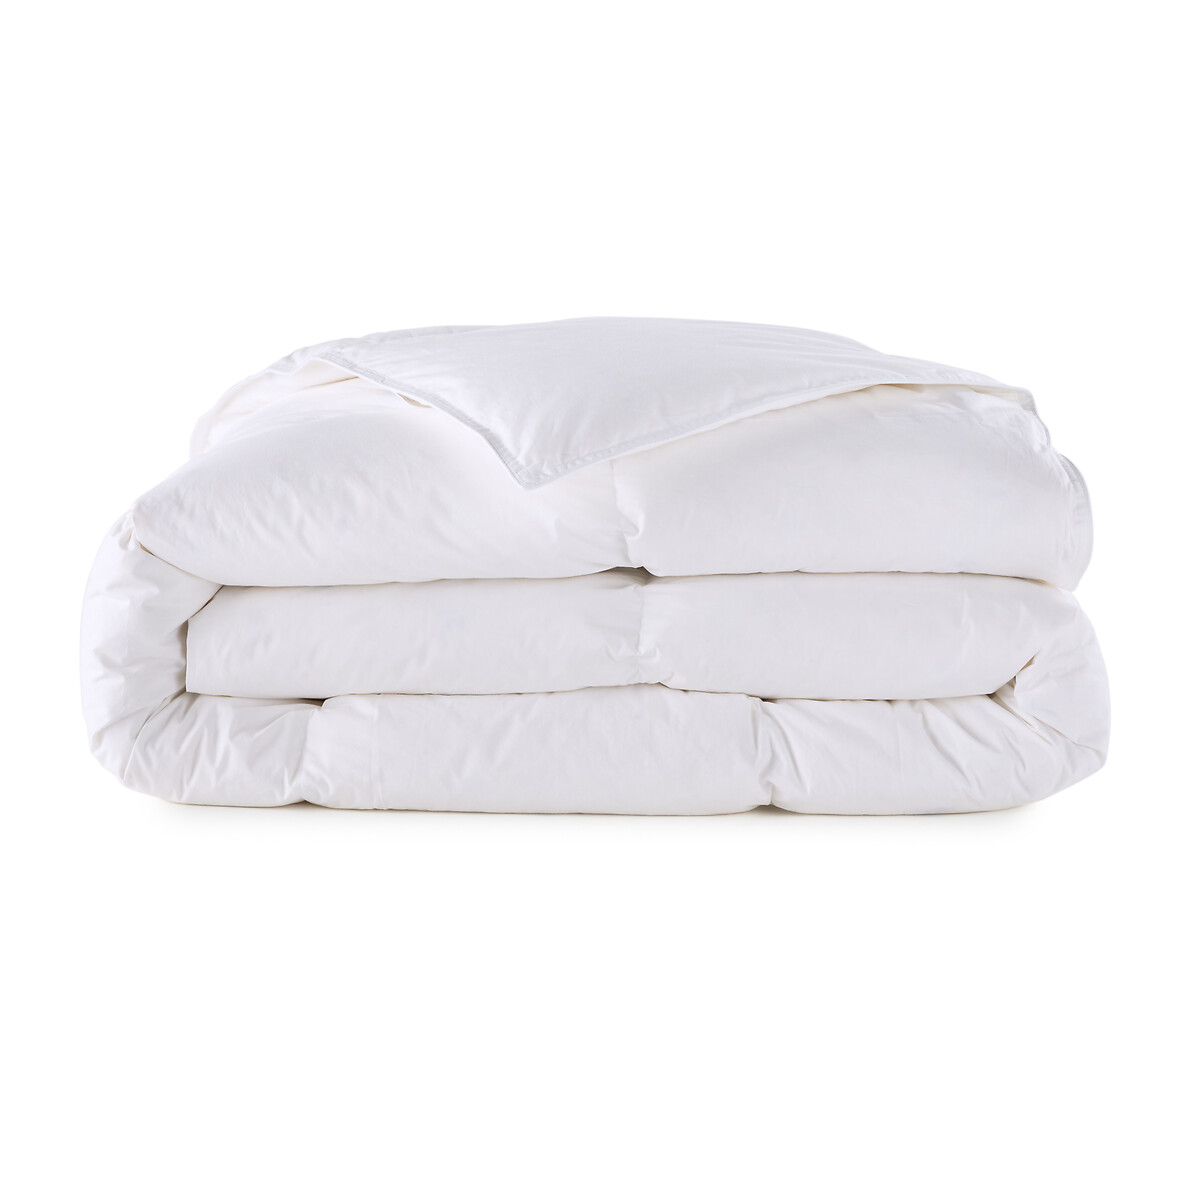 Одеяло La Redoute Натуральное для комфортного сна Теплое  пуха  перьев 200 x 200 см белый, размер 200 x 200 см - фото 2